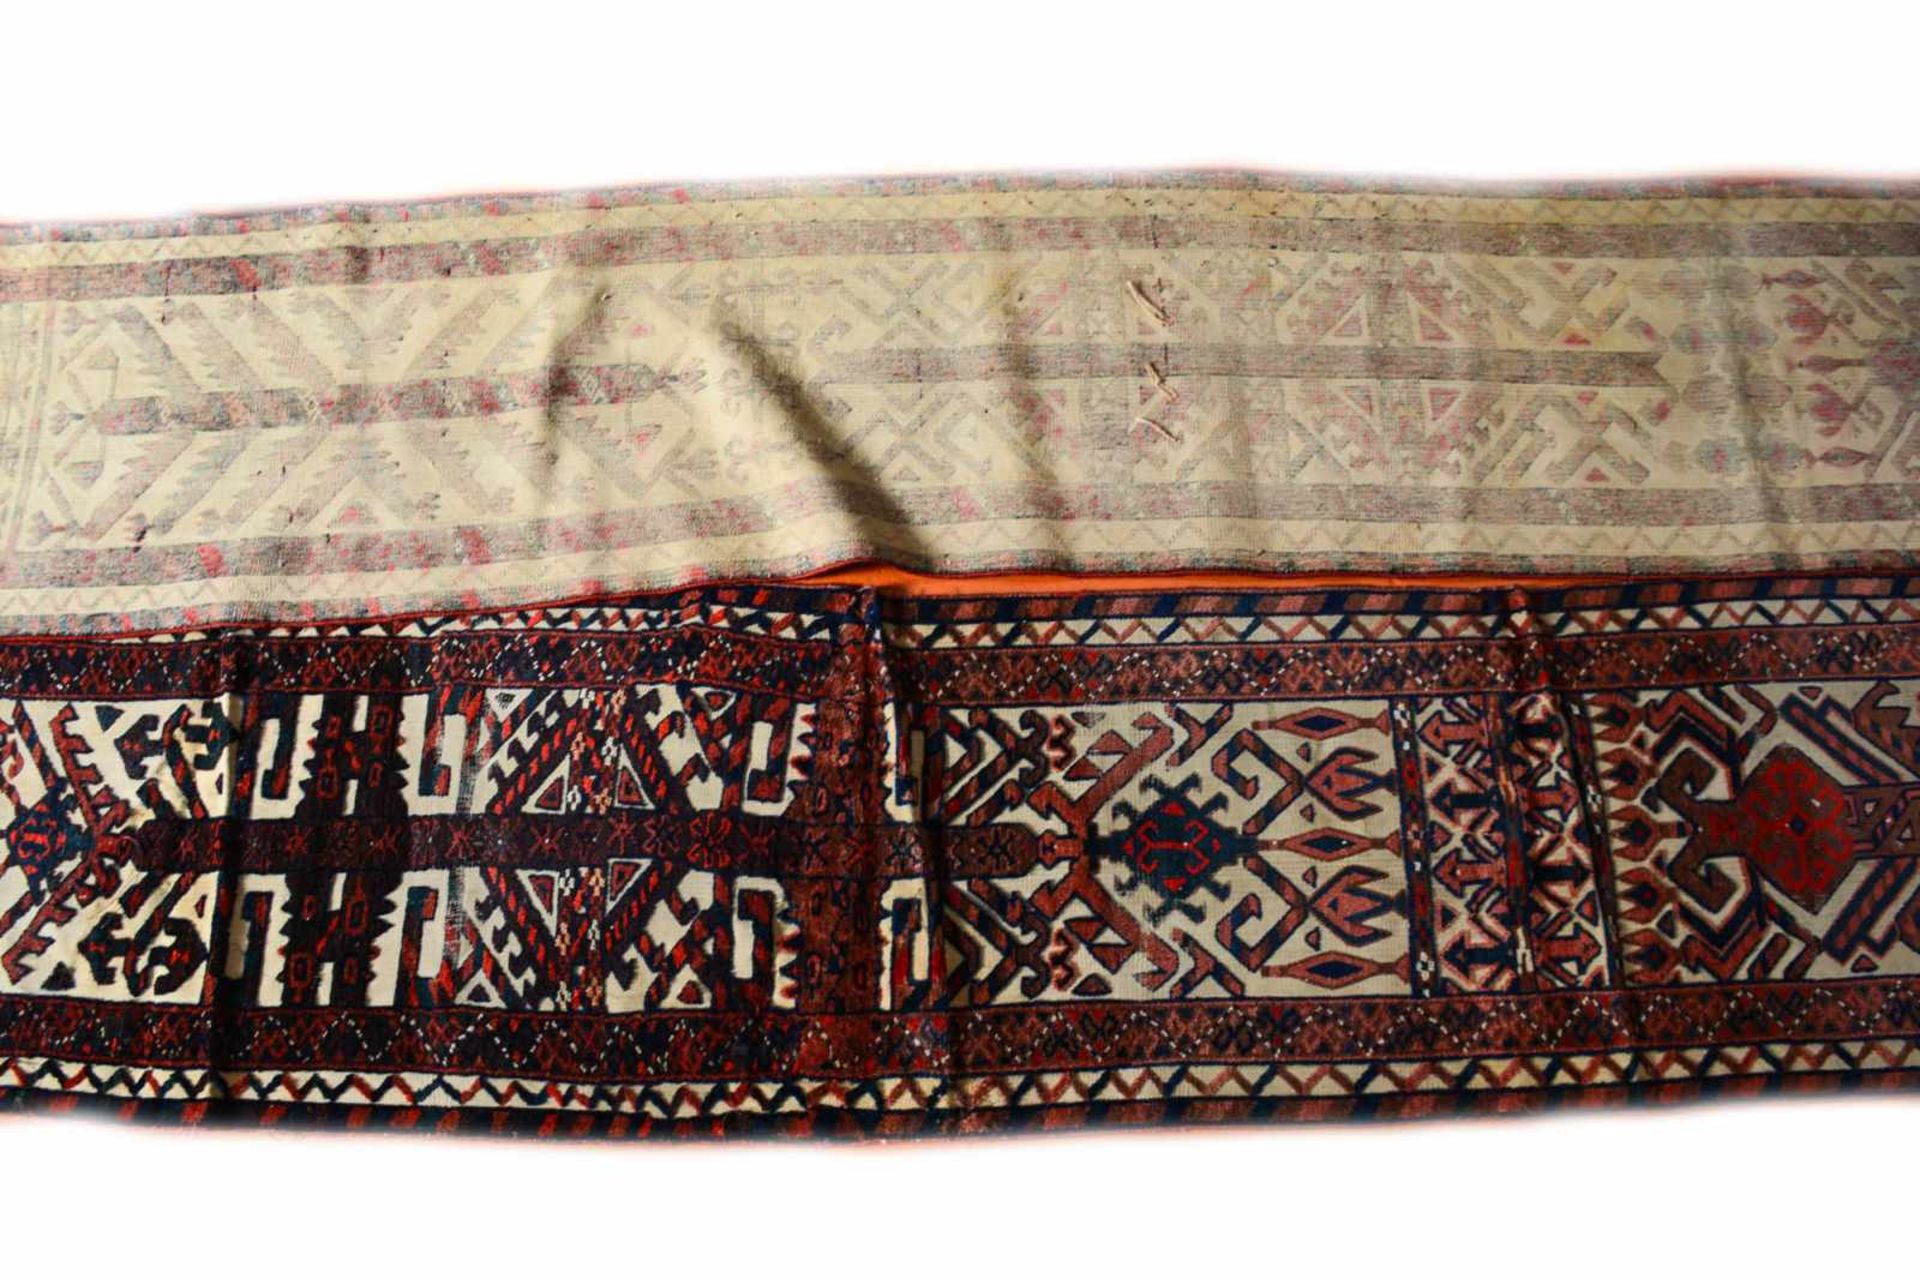 Yomud Zeltband Turkmenistan, um 1900, 1290 cm x 46 cm, partiell fleckig und abgenutzt